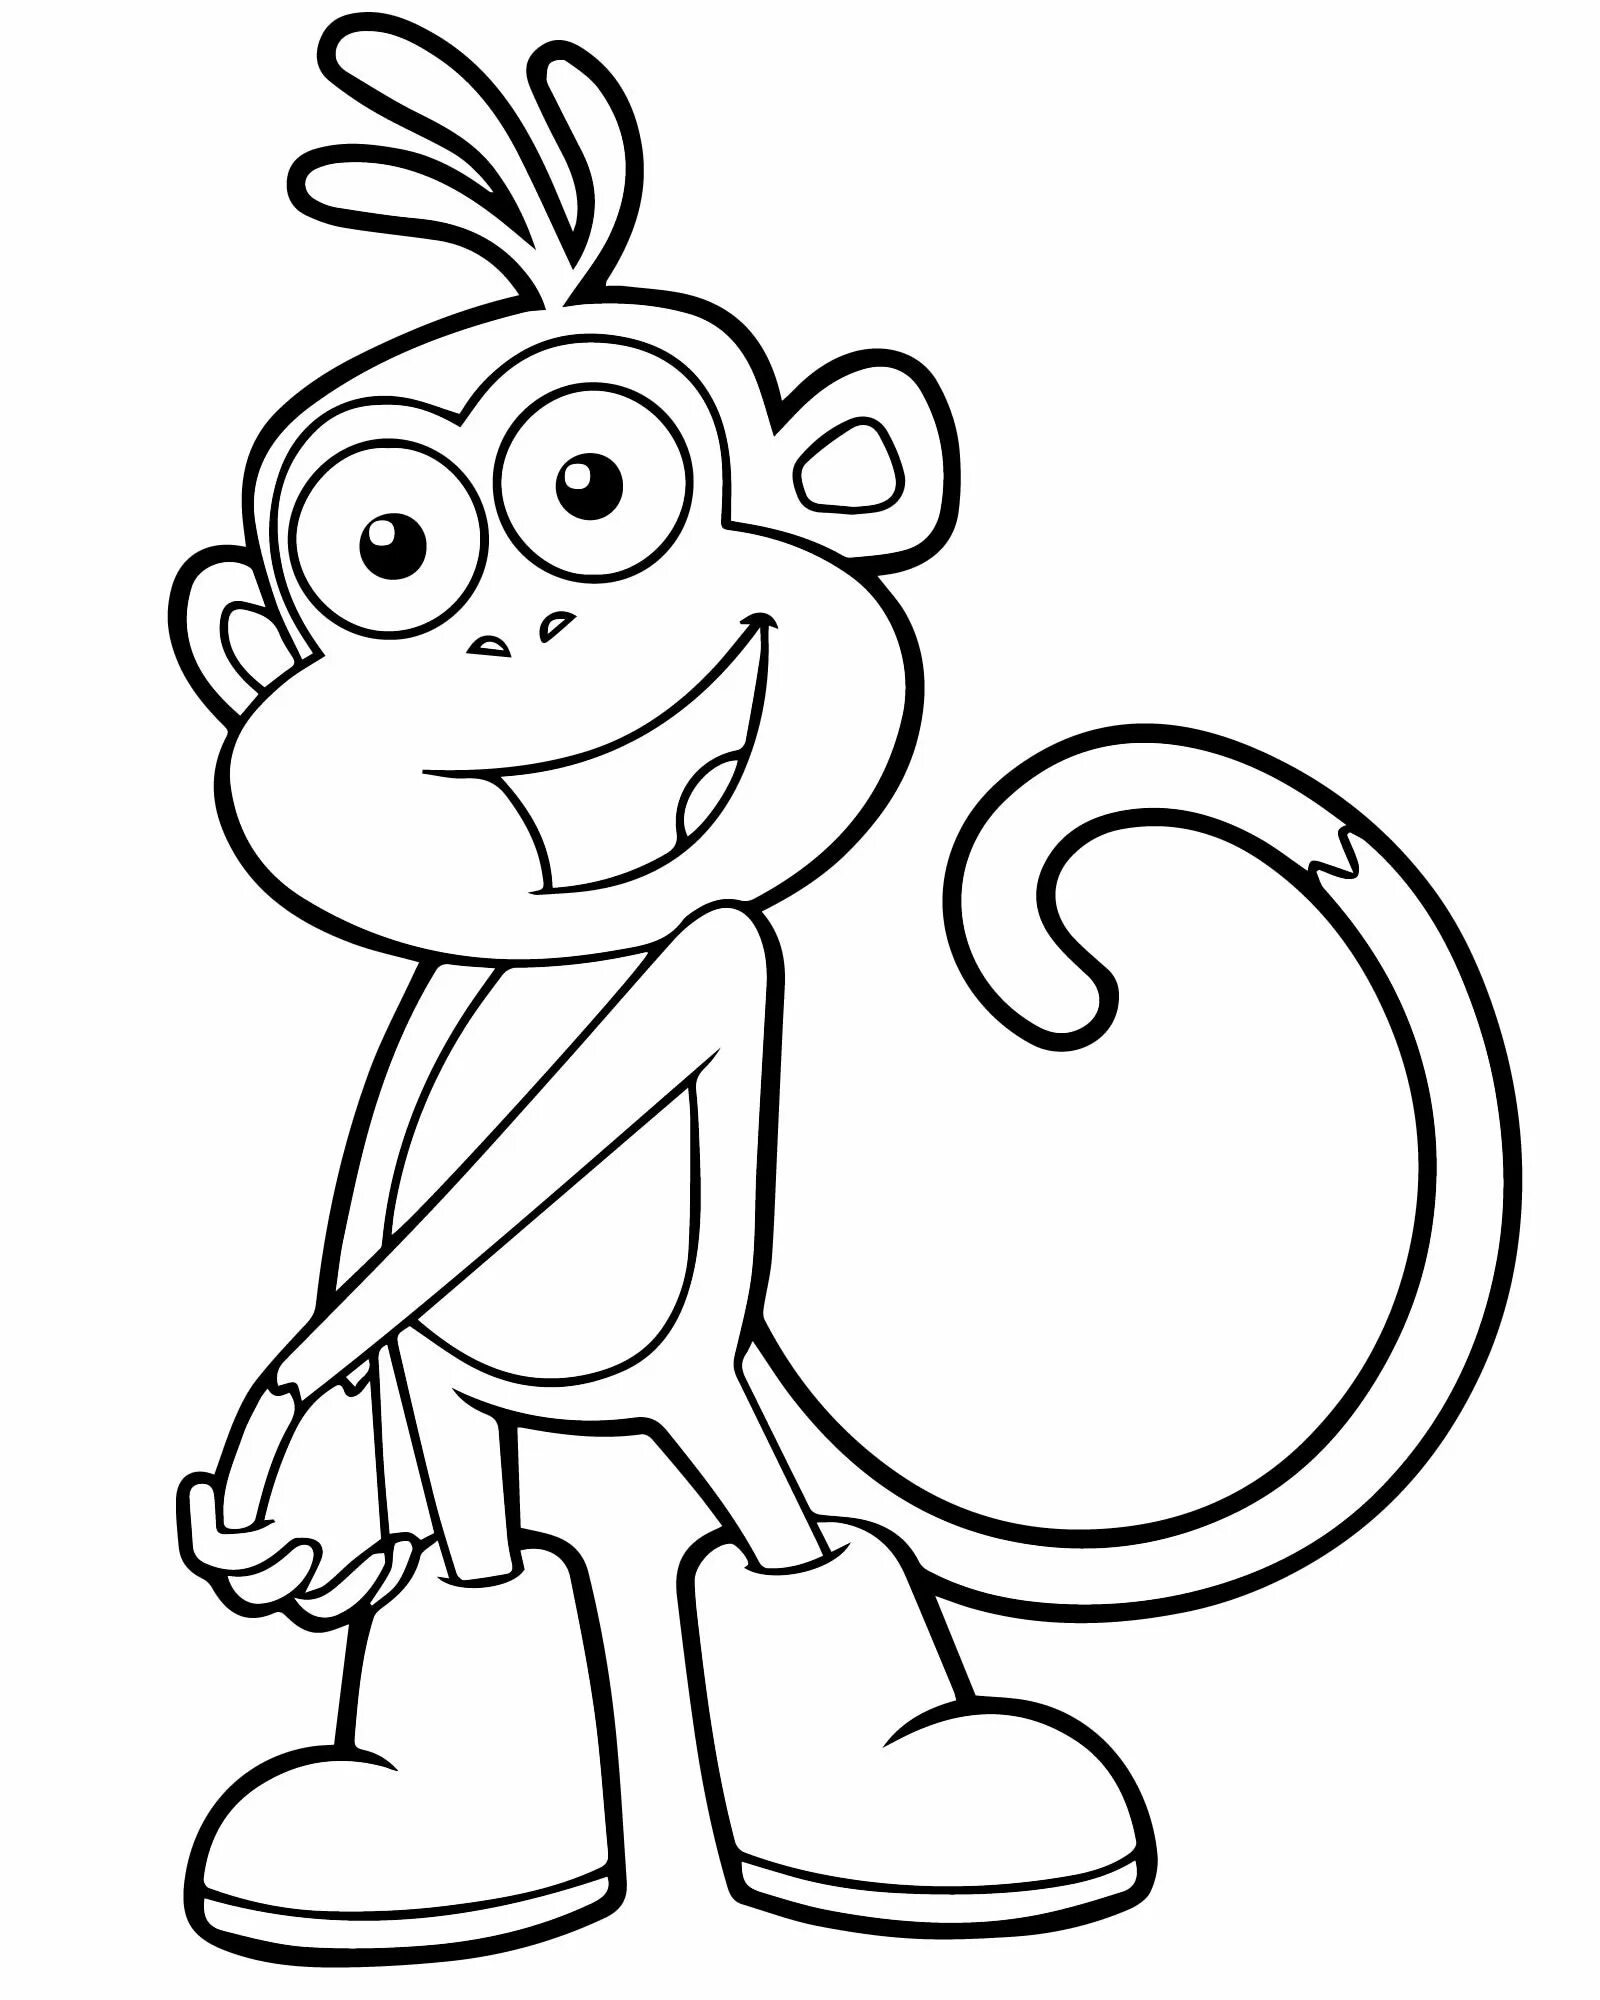 Раскраска фигурка благородной обезьяны